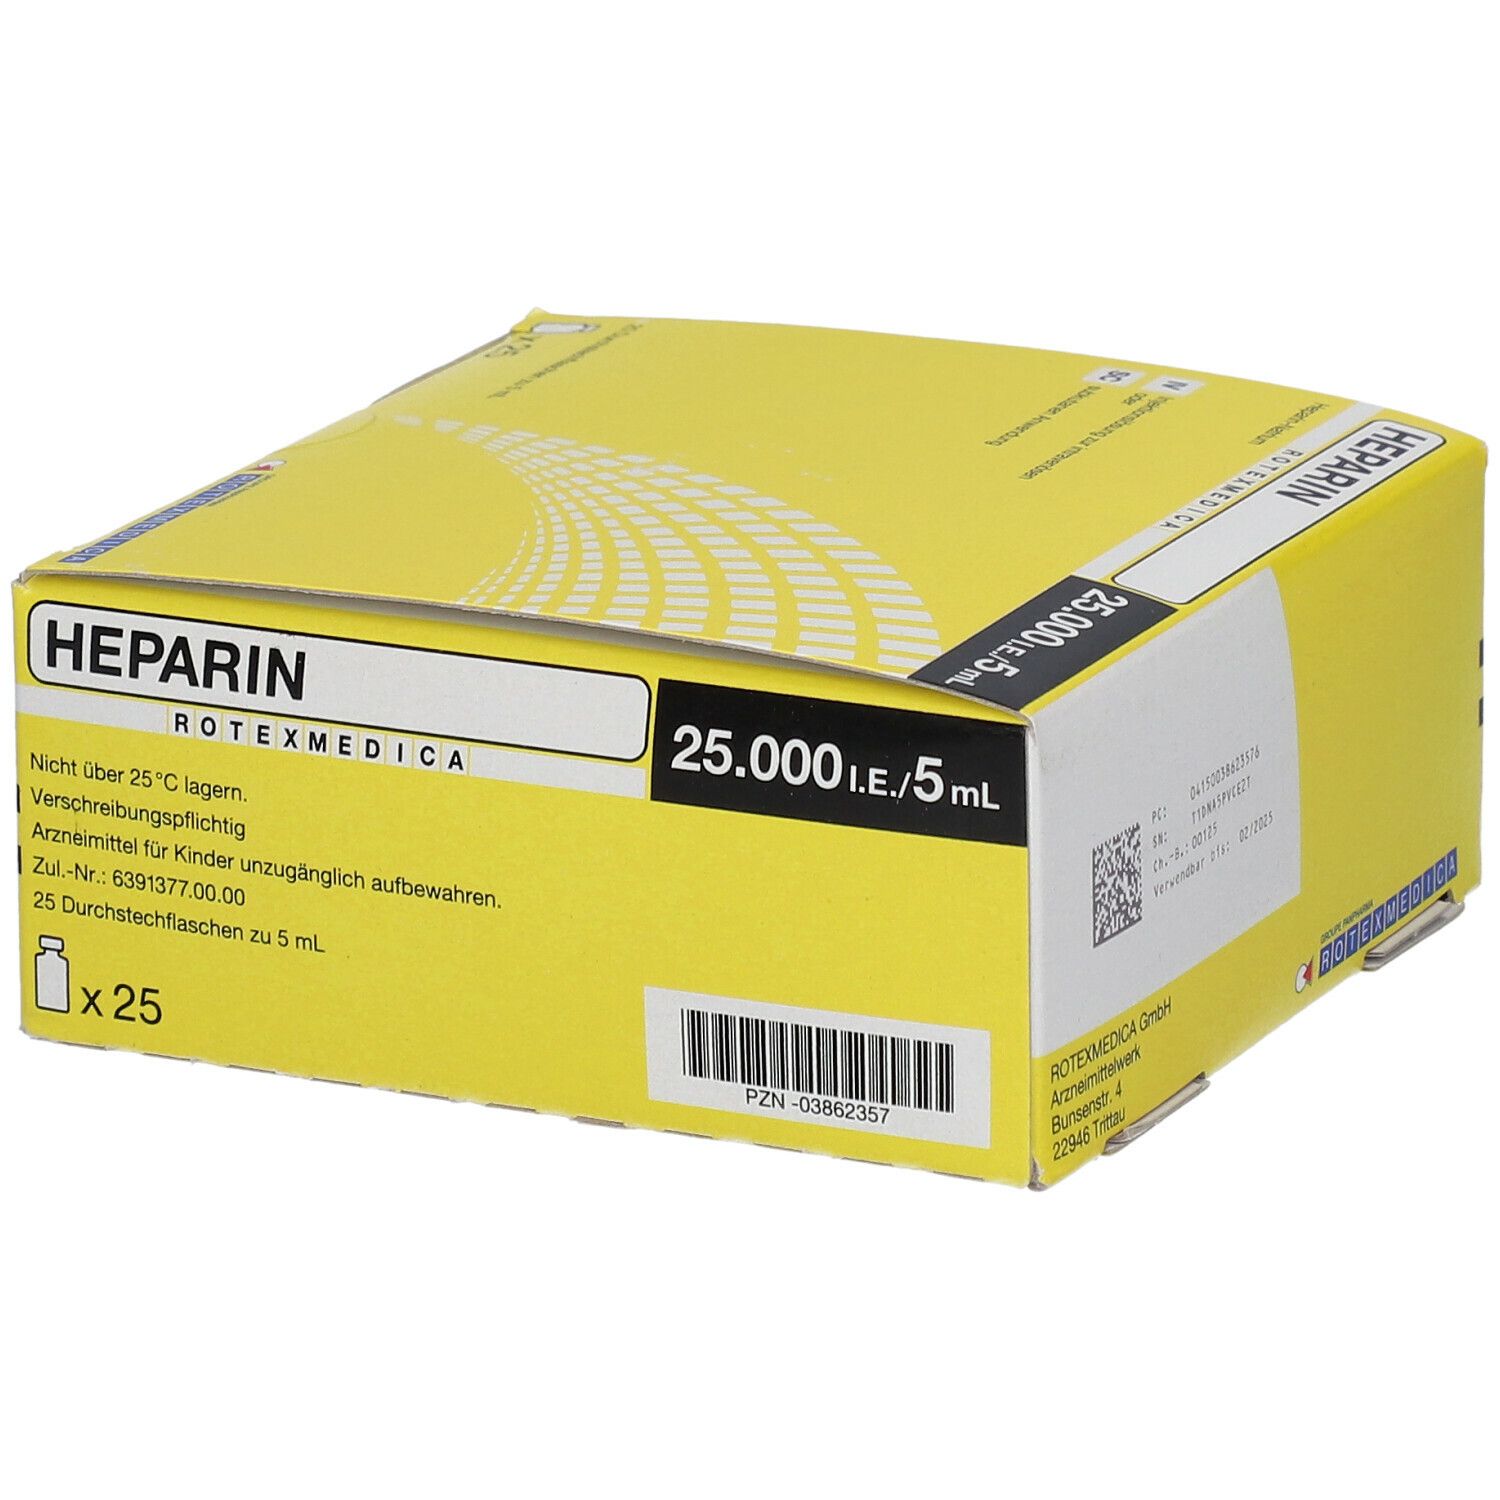 Heparin-Rotexmedica 25.000 I.E./5 ml